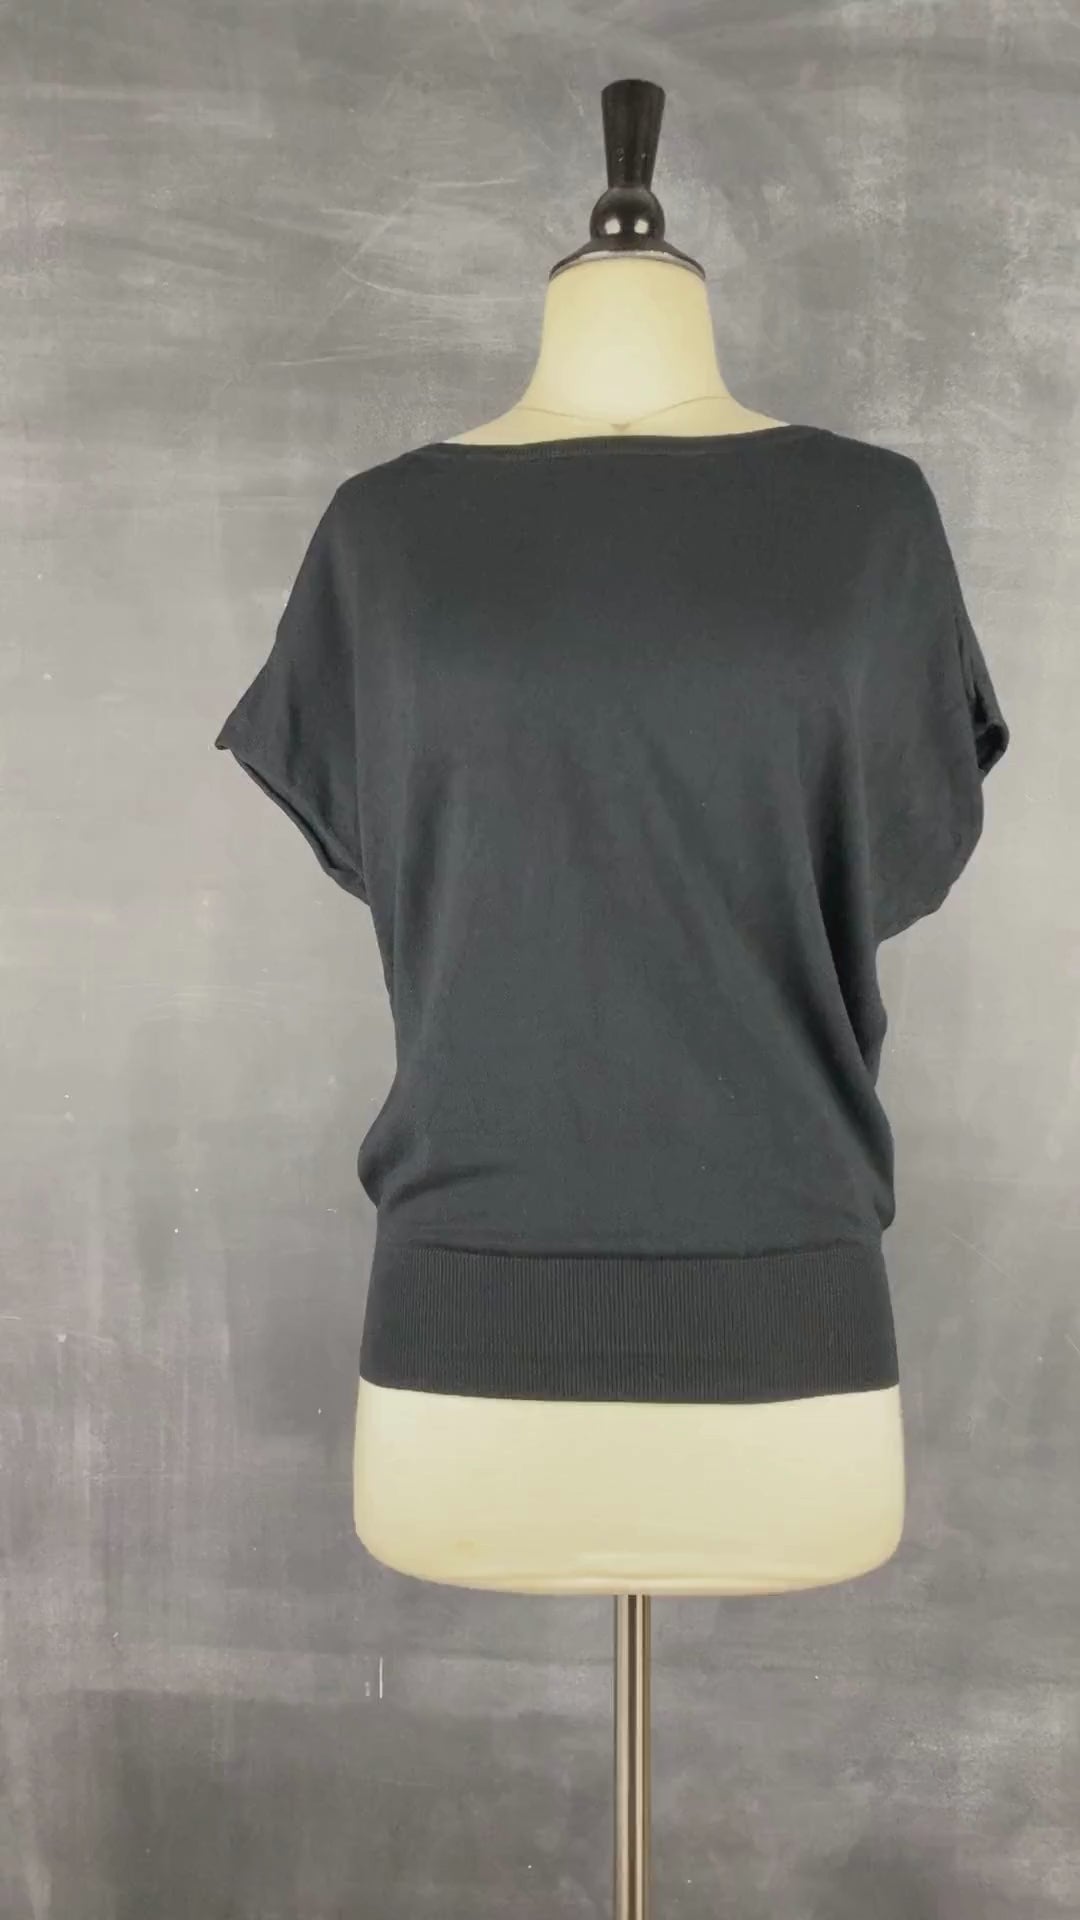 Chandail en tricot noir fin extensible Oui, taille 4 (xs/s). Vue de la vidéo qui présente tous les détails du chandail.